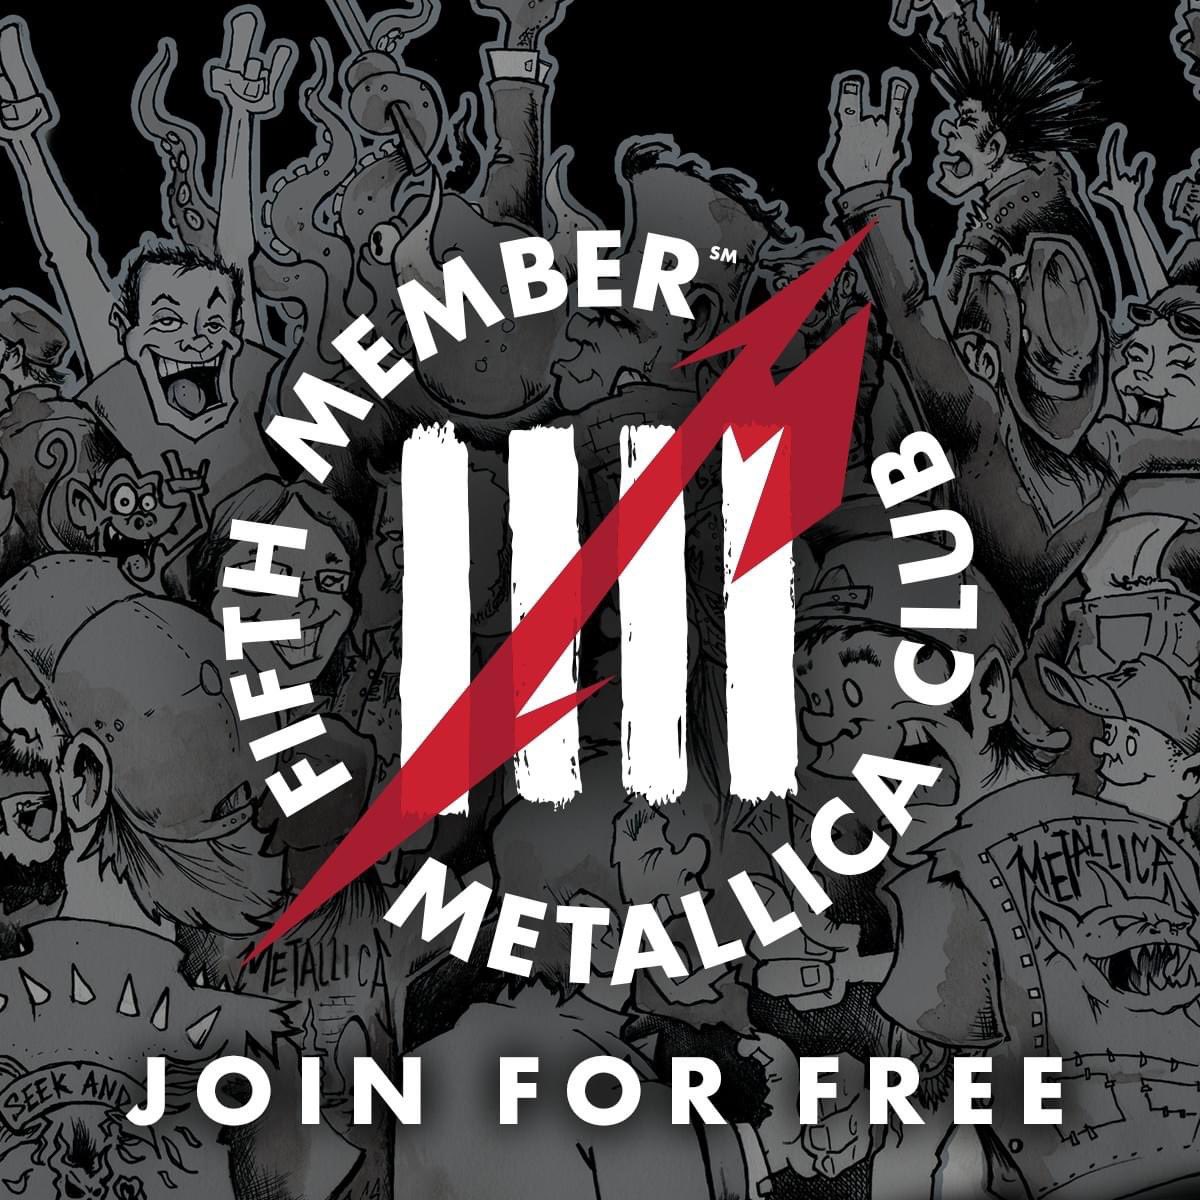 ¡Únete al club de fans de @Metallica totalmente GRATIS puedes conseguir entradas,merchandising, descuentos, descargas gratuitas, concursos exclusivos incluyendo acceso al Snake Pit y más!
Conviértete en un #FIFTHMEMBER hoy en metallica.com/register
#Metallica #METALLICASince1981